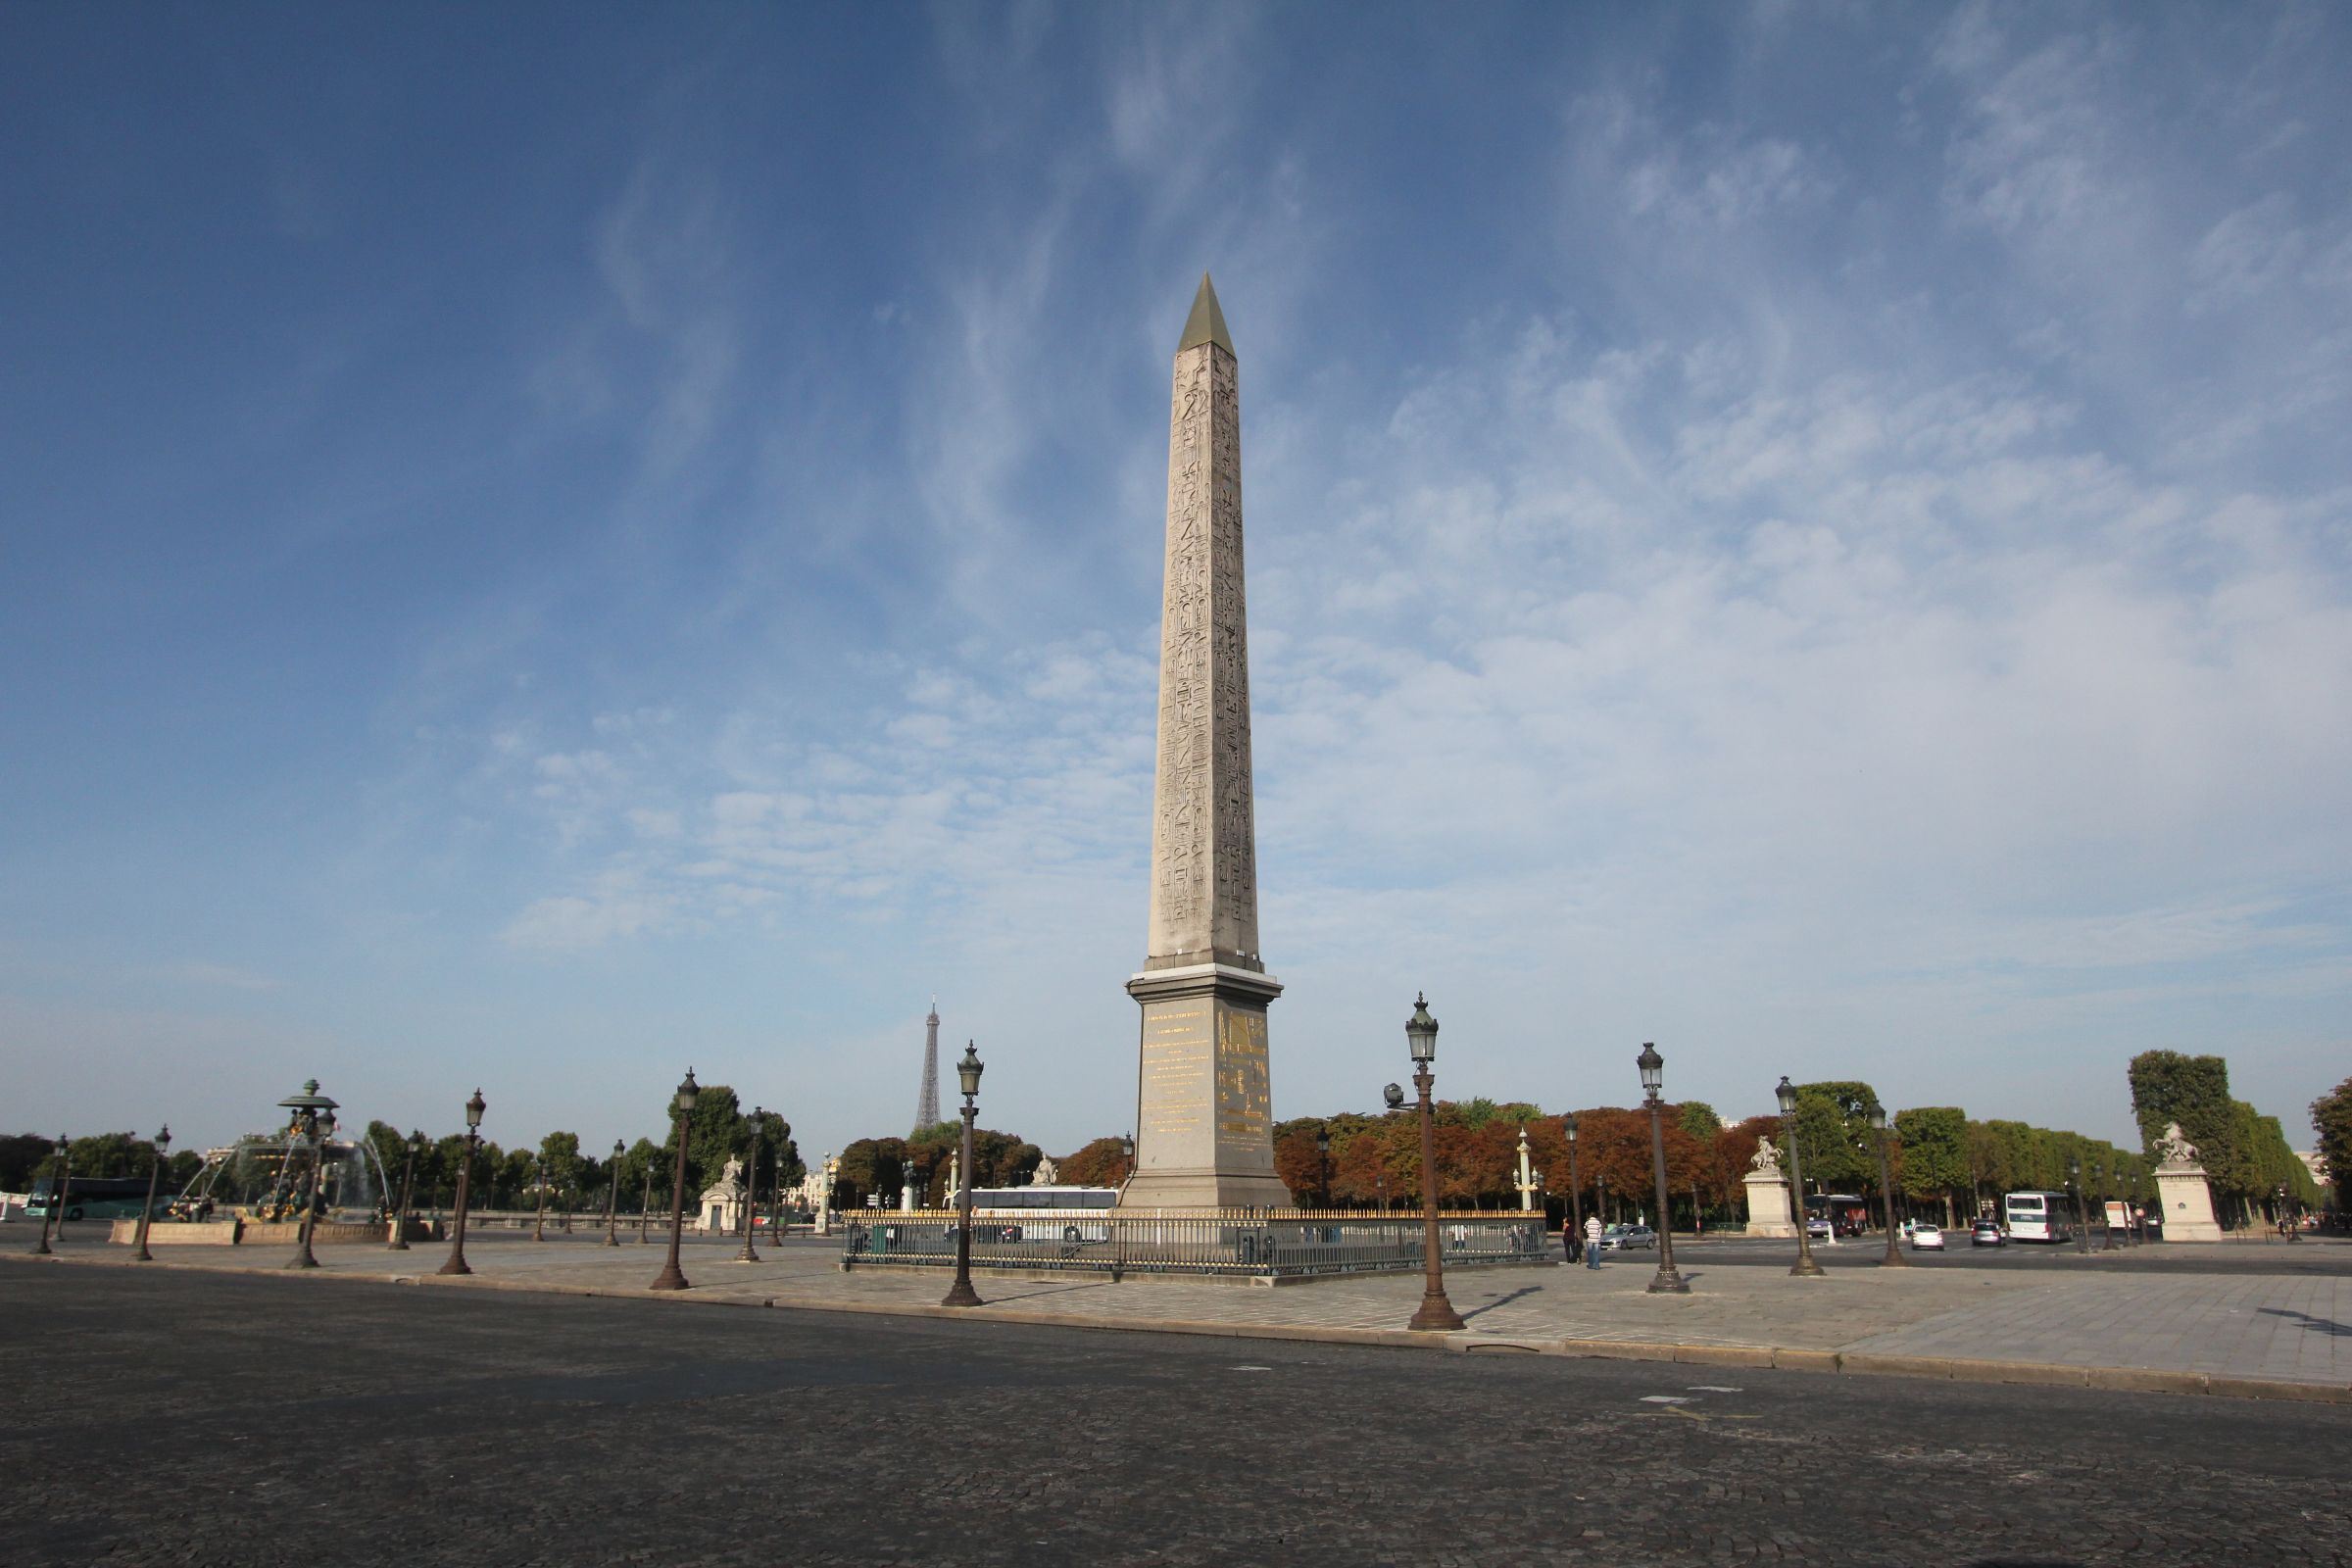 Obelisk of Luxor, Place de la Concorde